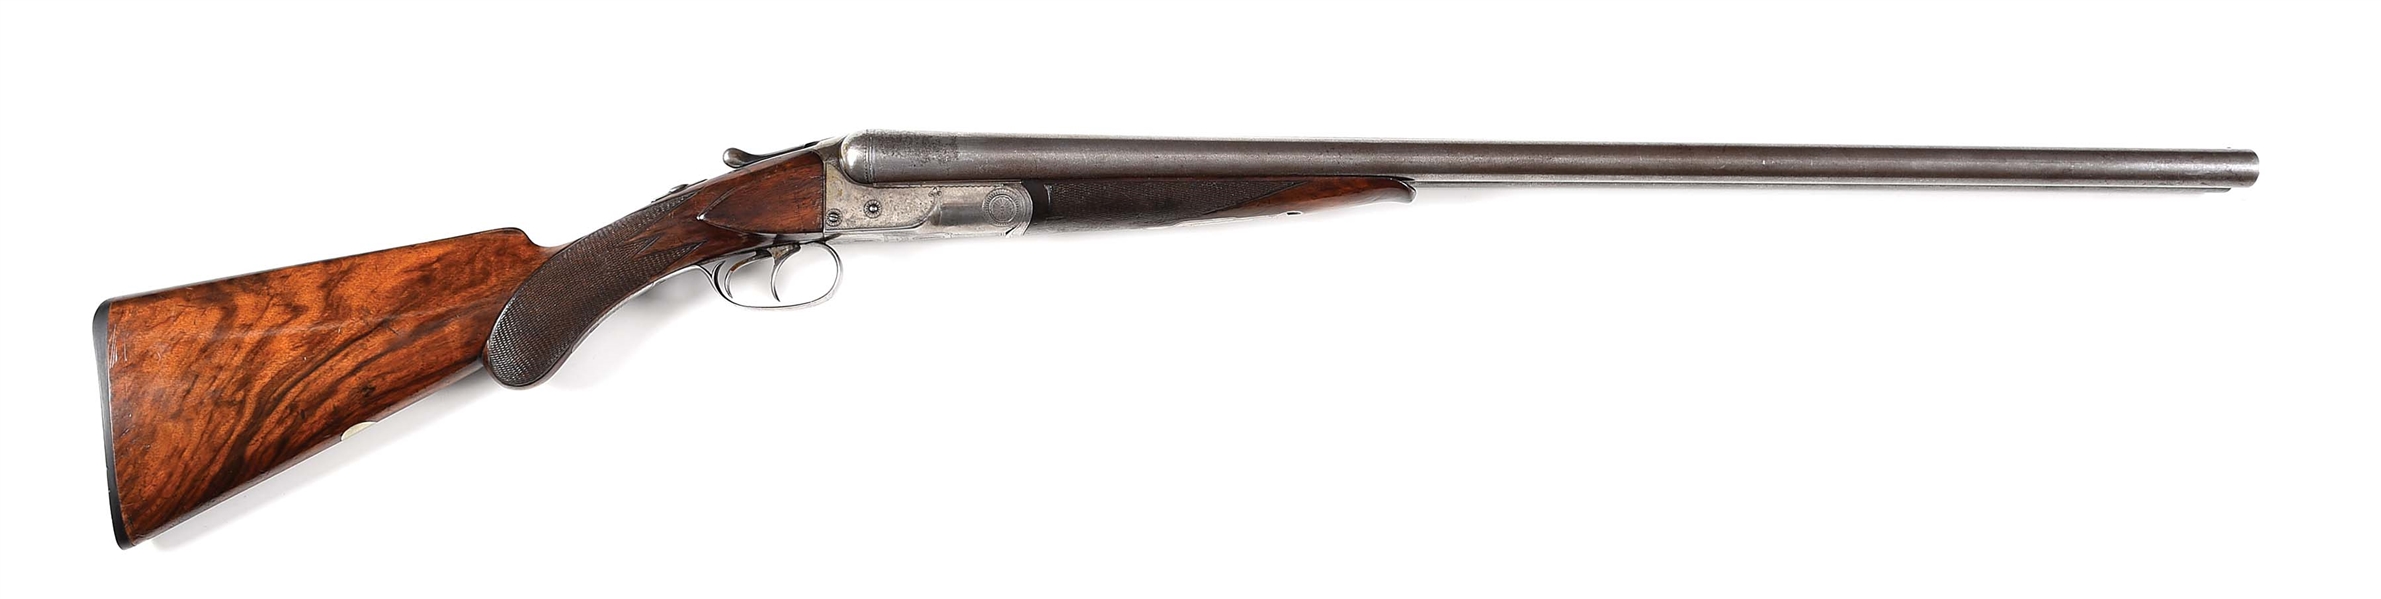 (A) COLT MODEL 1883 SIDE BY SIDE SHOTGUN. 